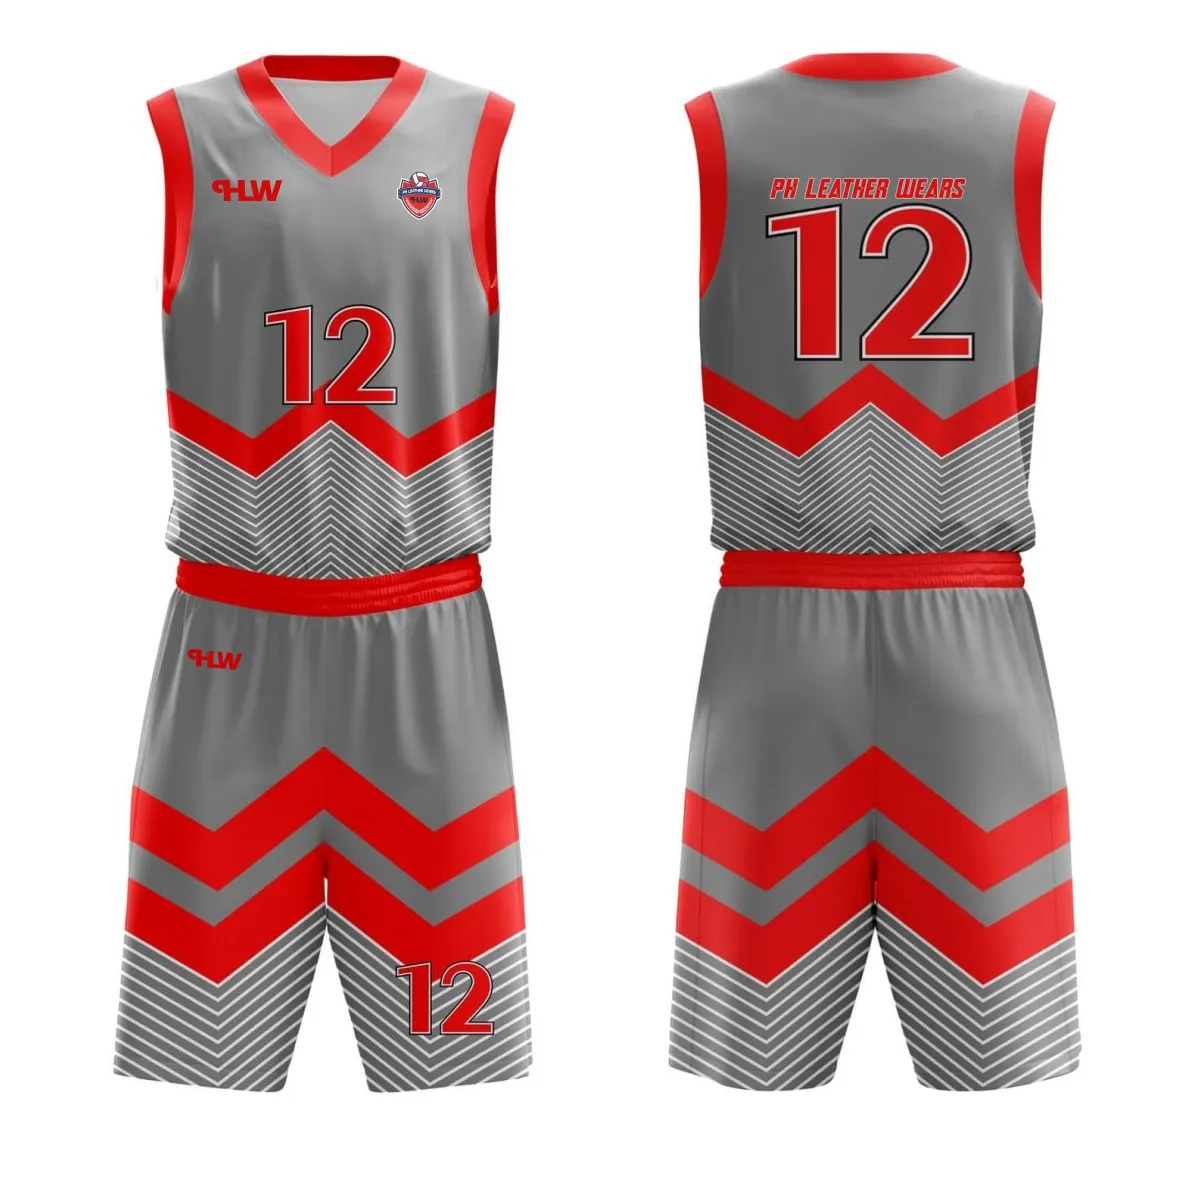 Pallacanestro uniforme sublimazione completa Logo uniforme ricamo in bianco attrezzatura personalizzata pallacanestro Jersey etichetta privata